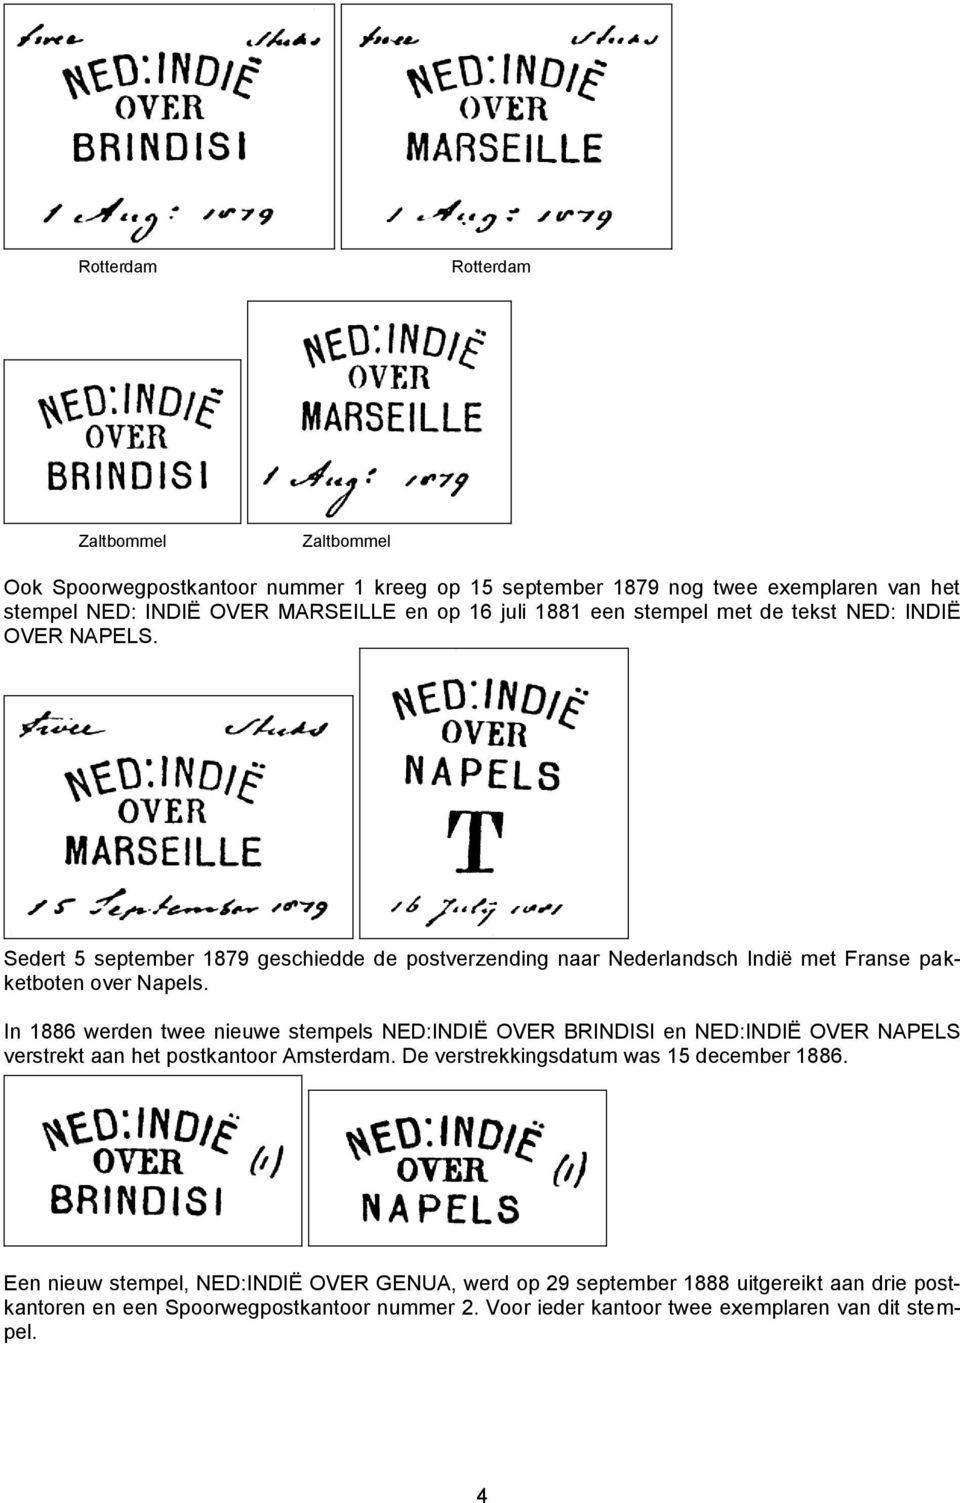 In 1886 werden twee nieuwe stempels NED:INDIË OVER BRINDISI en NED:INDIË OVER NAPELS verstrekt aan het postkantoor Amsterdam. De verstrekkingsdatum was 15 december 1886.